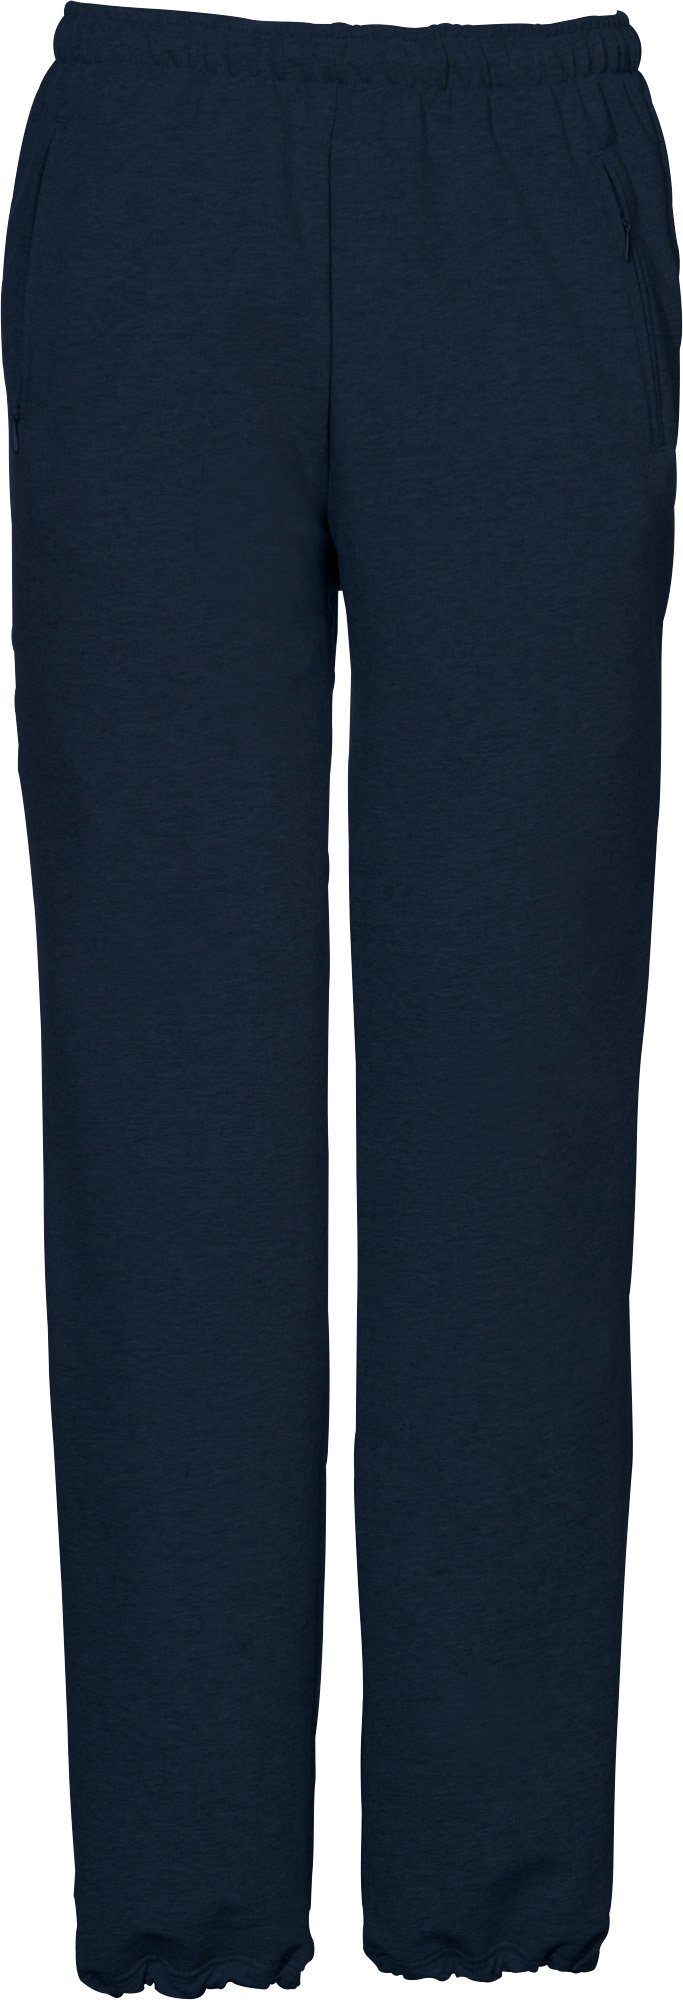 SCHNEIDER Sportswear Jogginghose Herren-Freizeithose "HORGENM", lang Uni dunkelblau